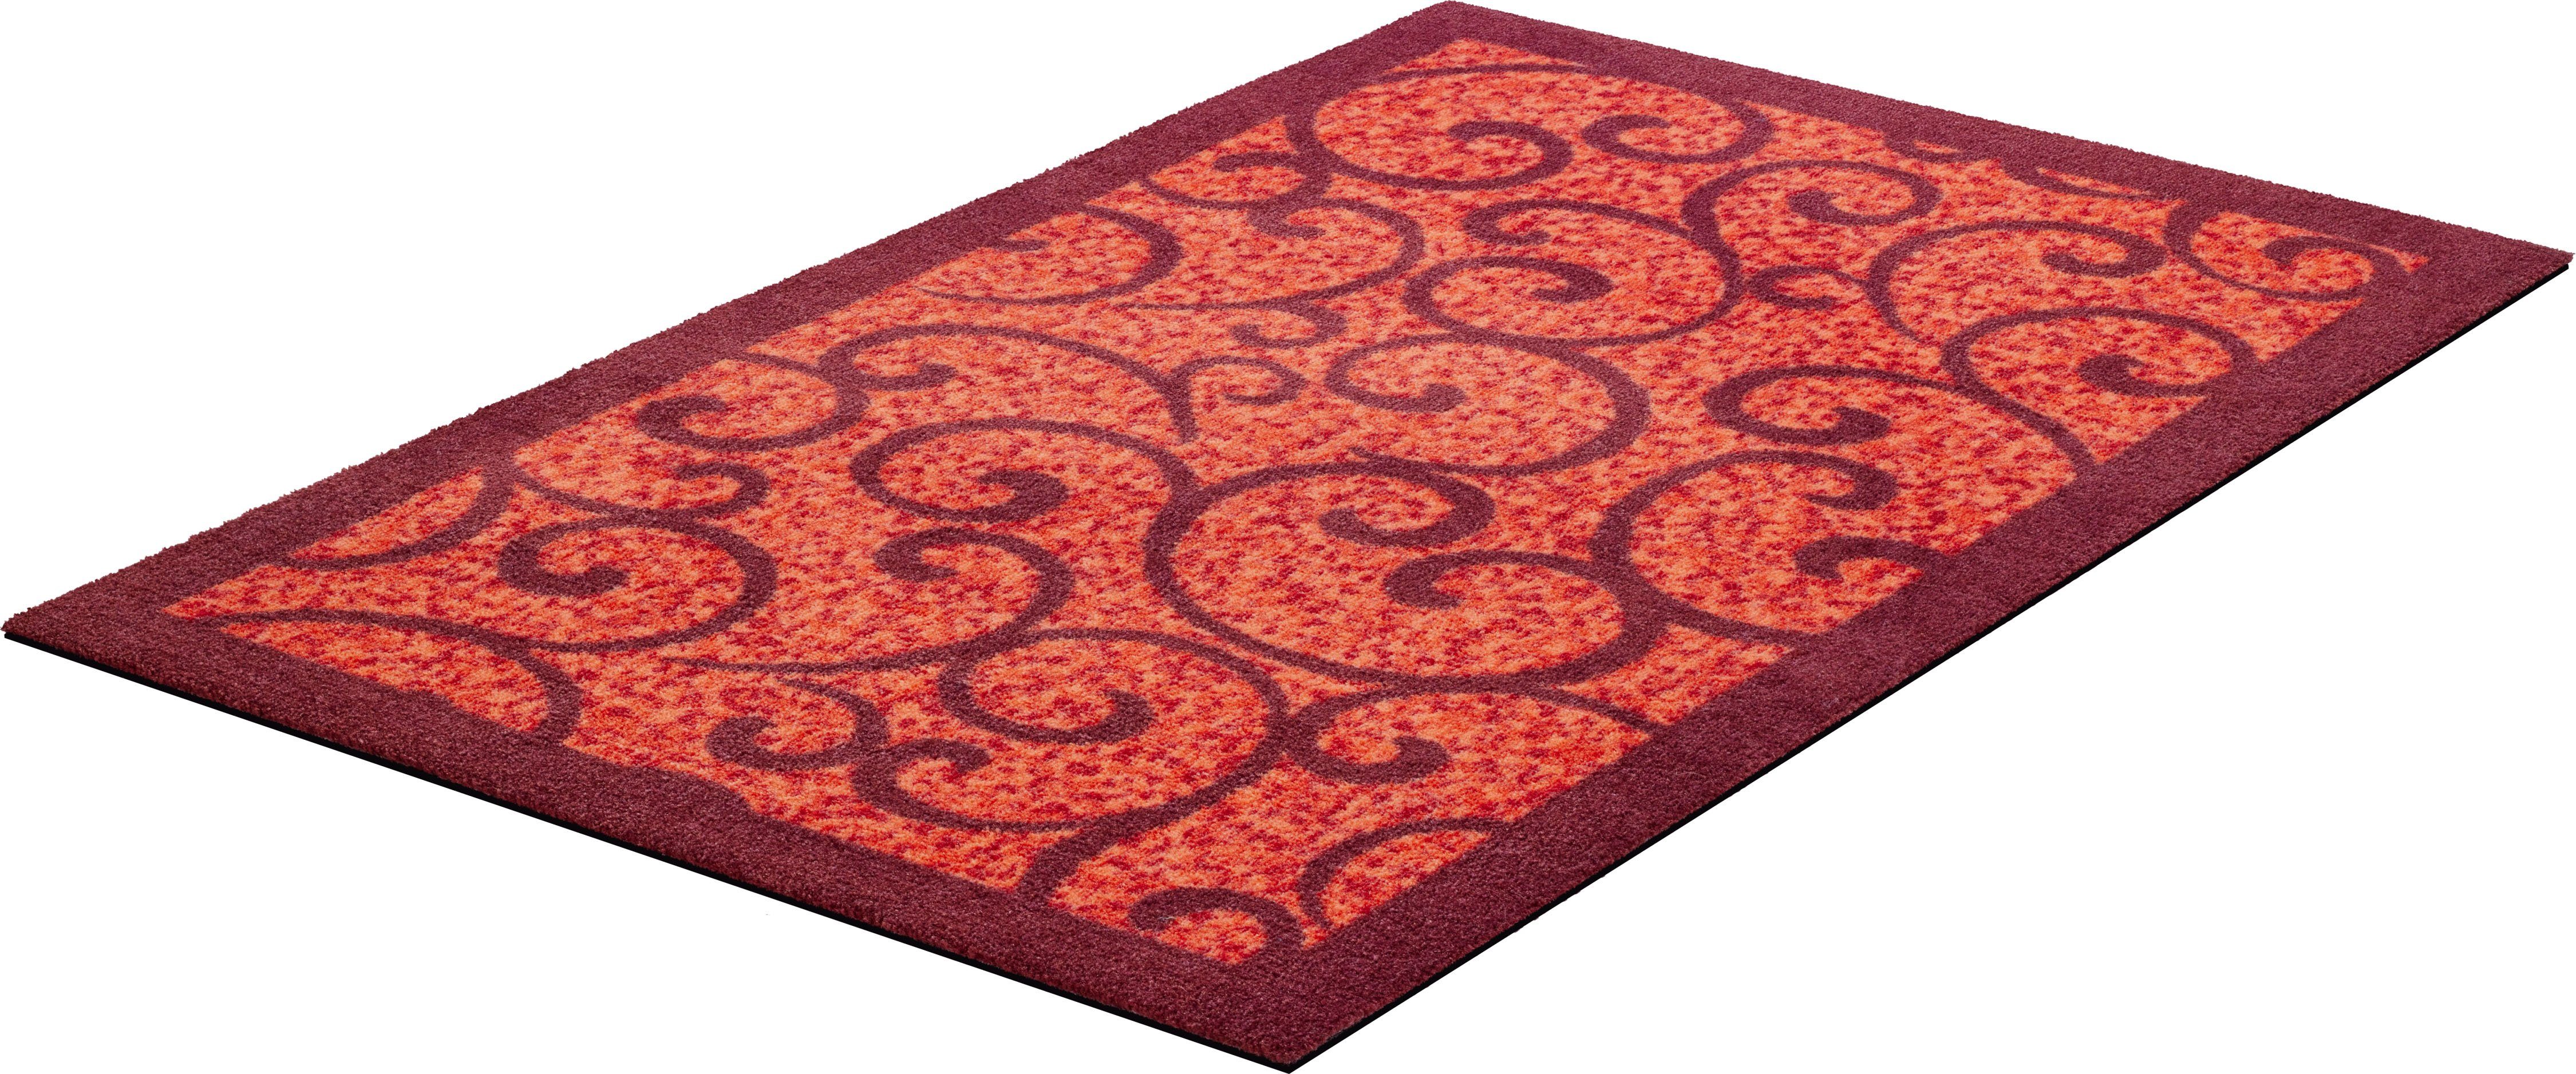 Teppich Grillo, Grund, rechteckig, Höhe: 8 mm, In- und Outdoor geeignet, verspieltes Design, Teppich mit Bordüre rot